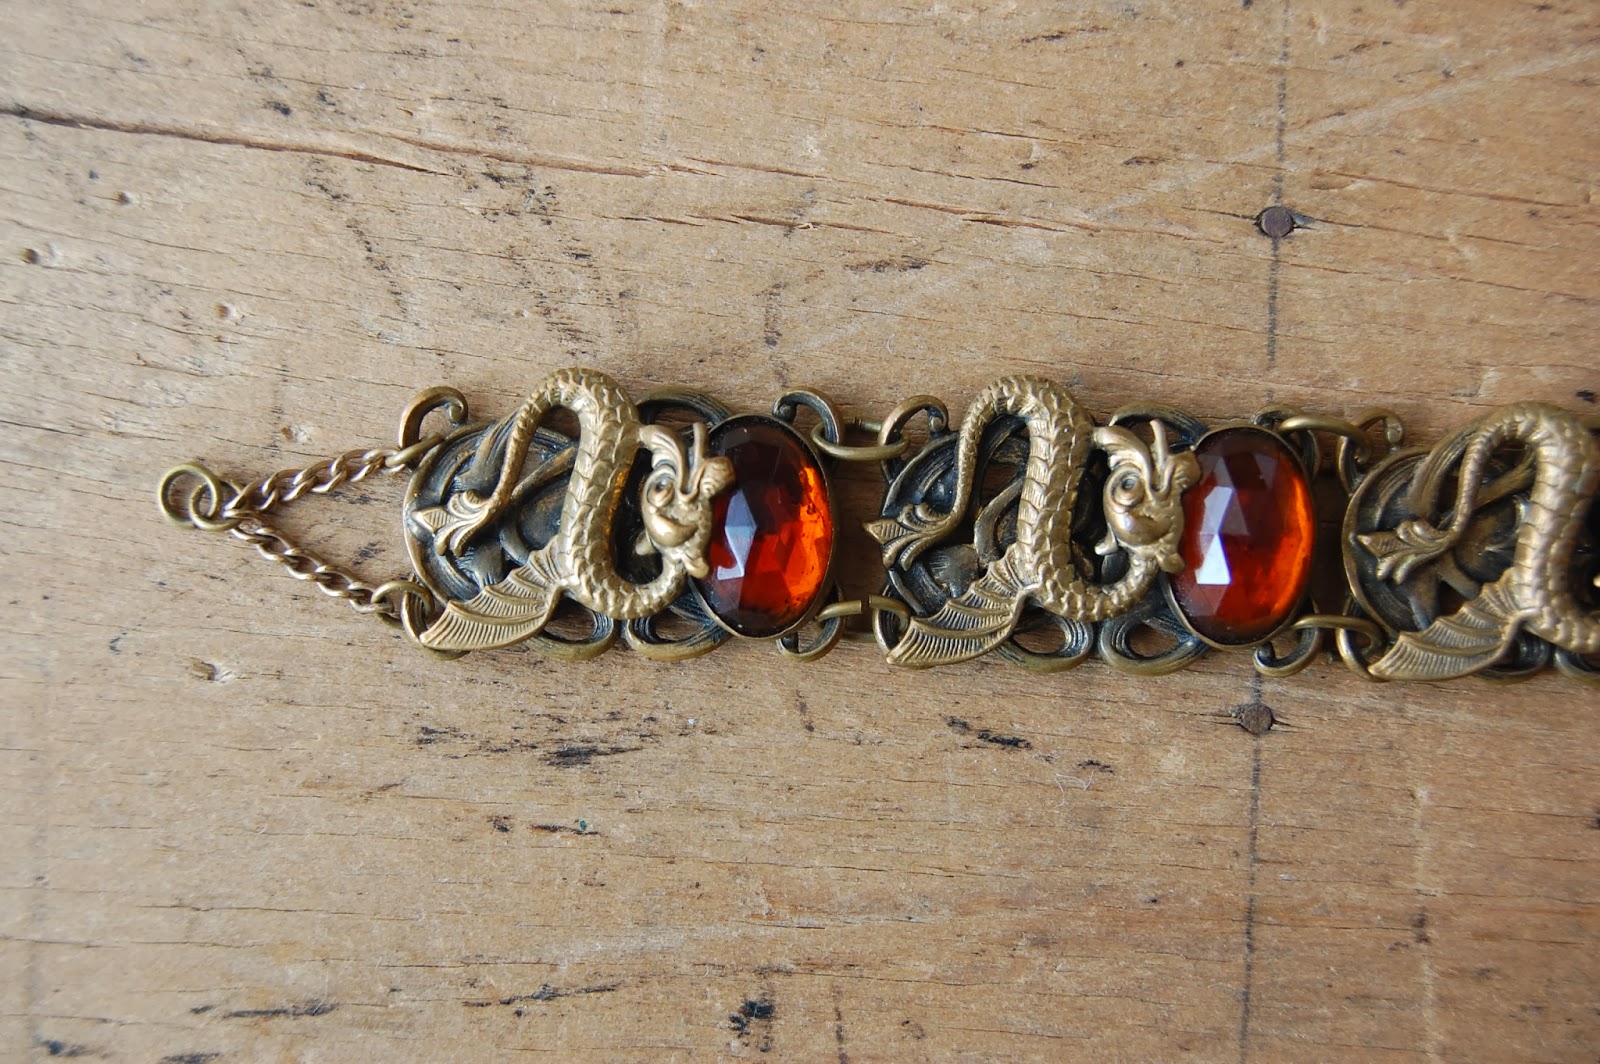 https://www.etsy.com/listing/179985003/antique-czech-glass-sea-dragon-bracelet?ref=shop_home_active_1